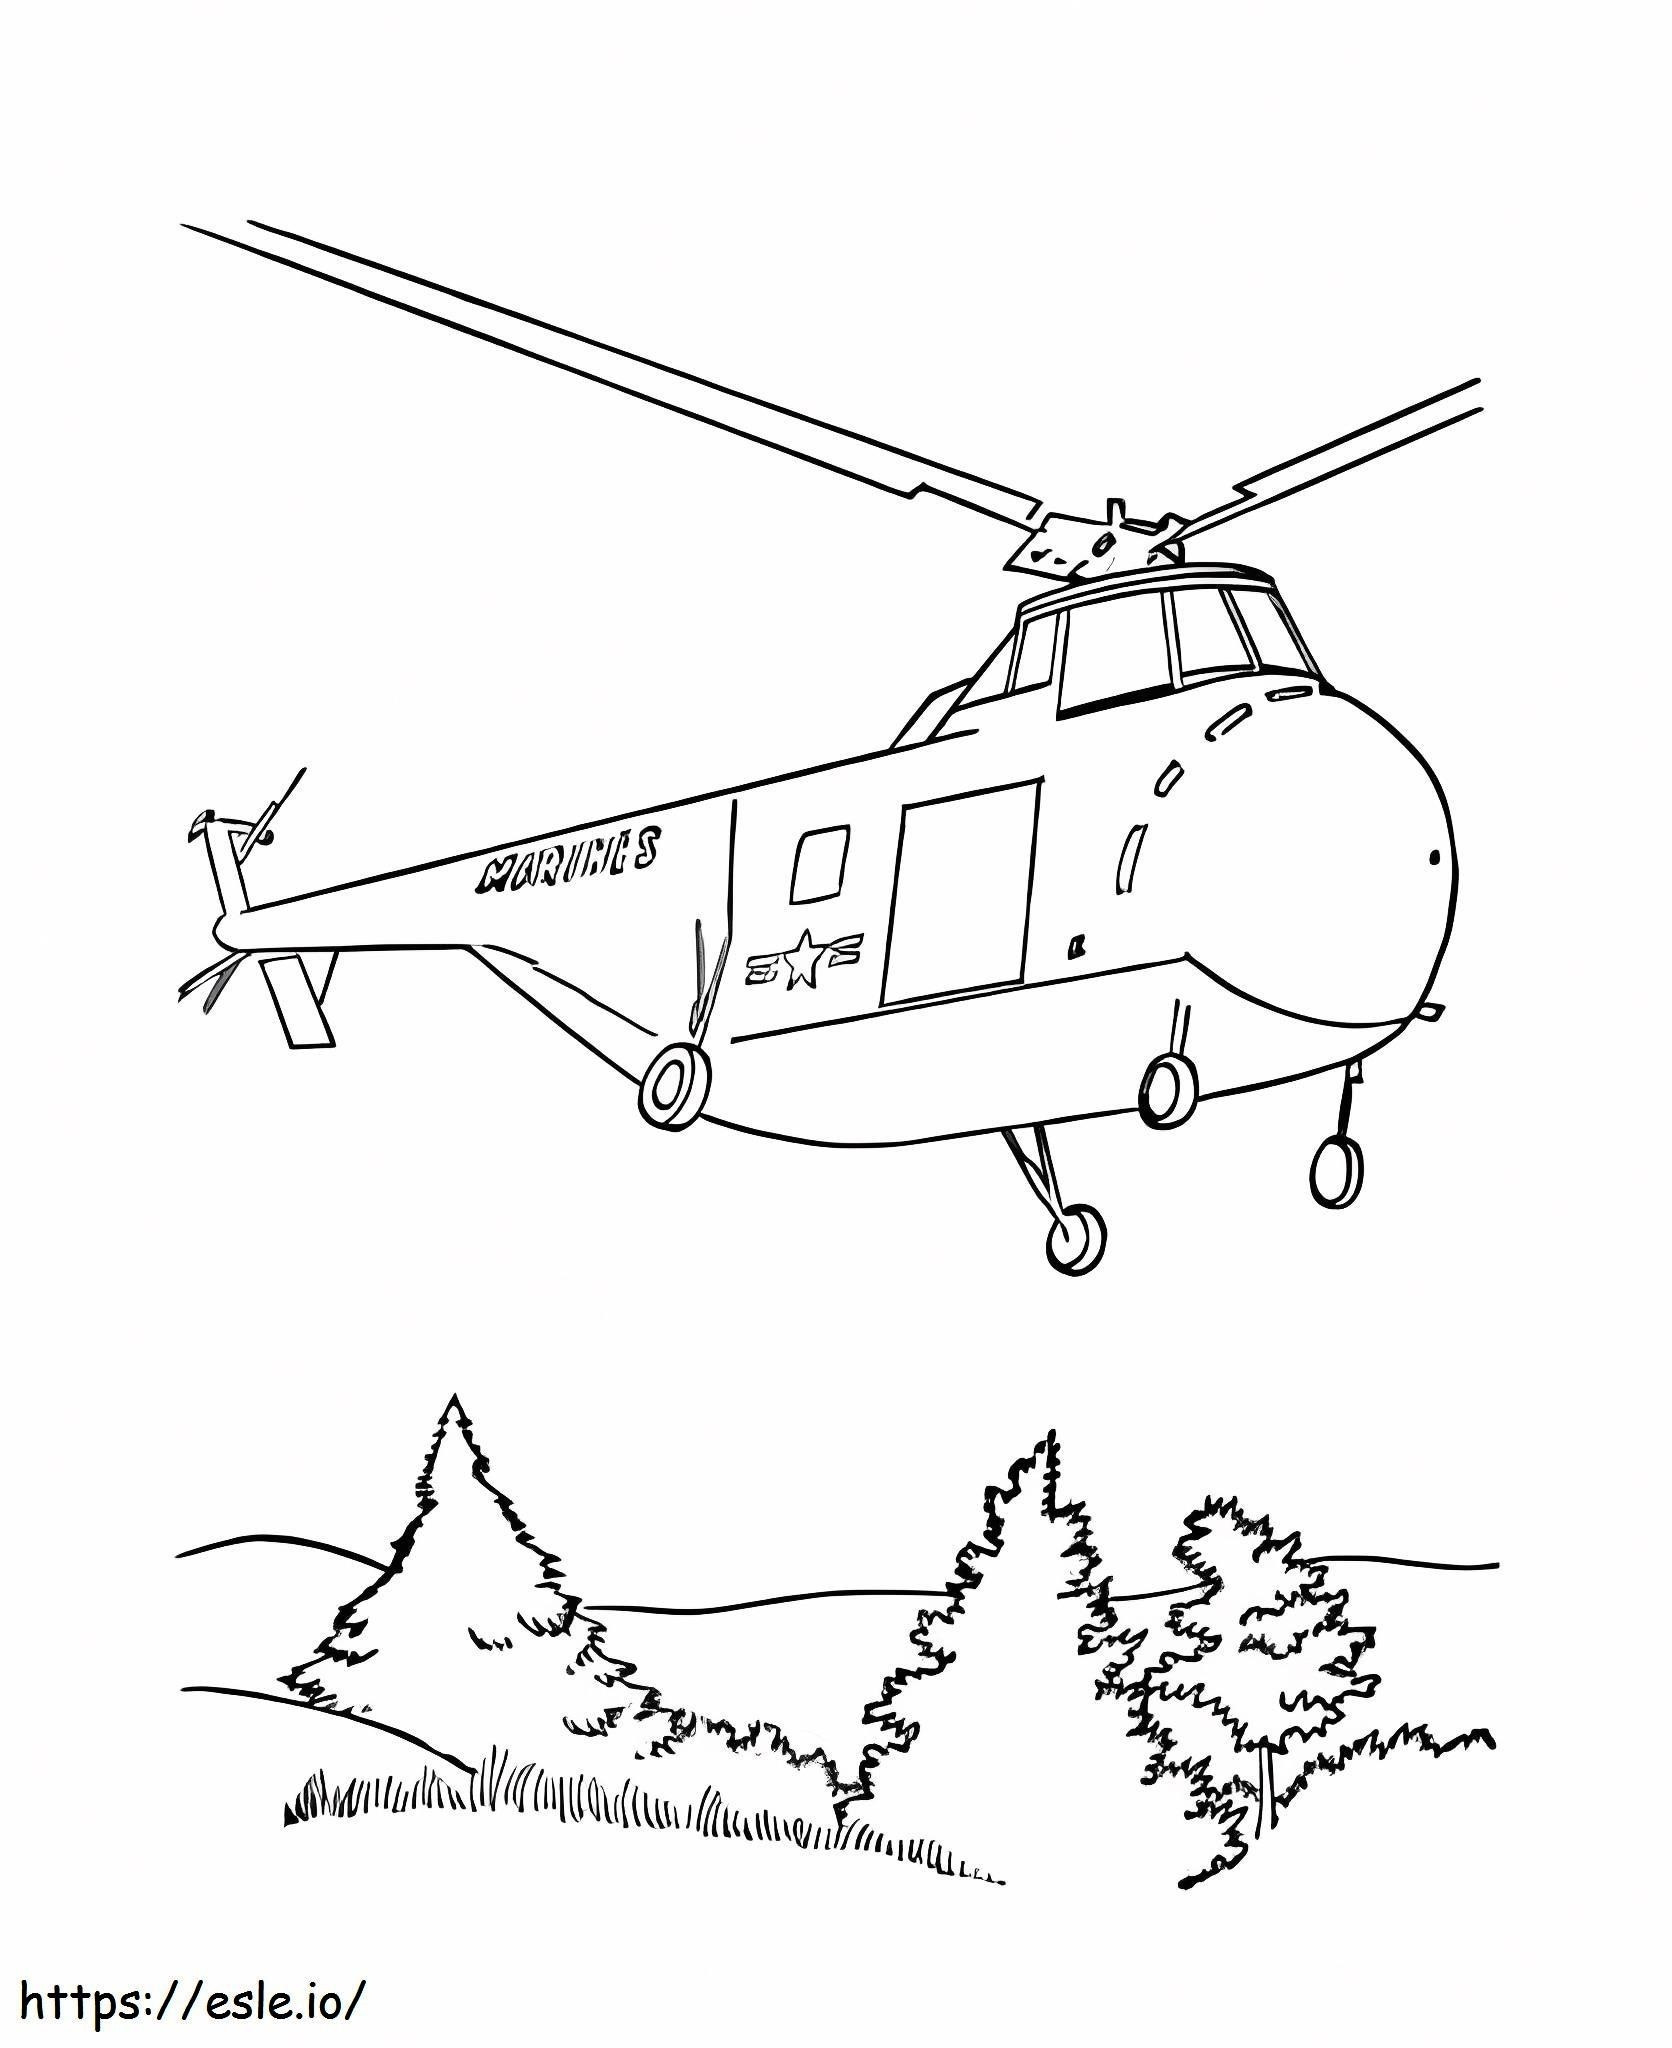 Elicopterul Armatei de colorat